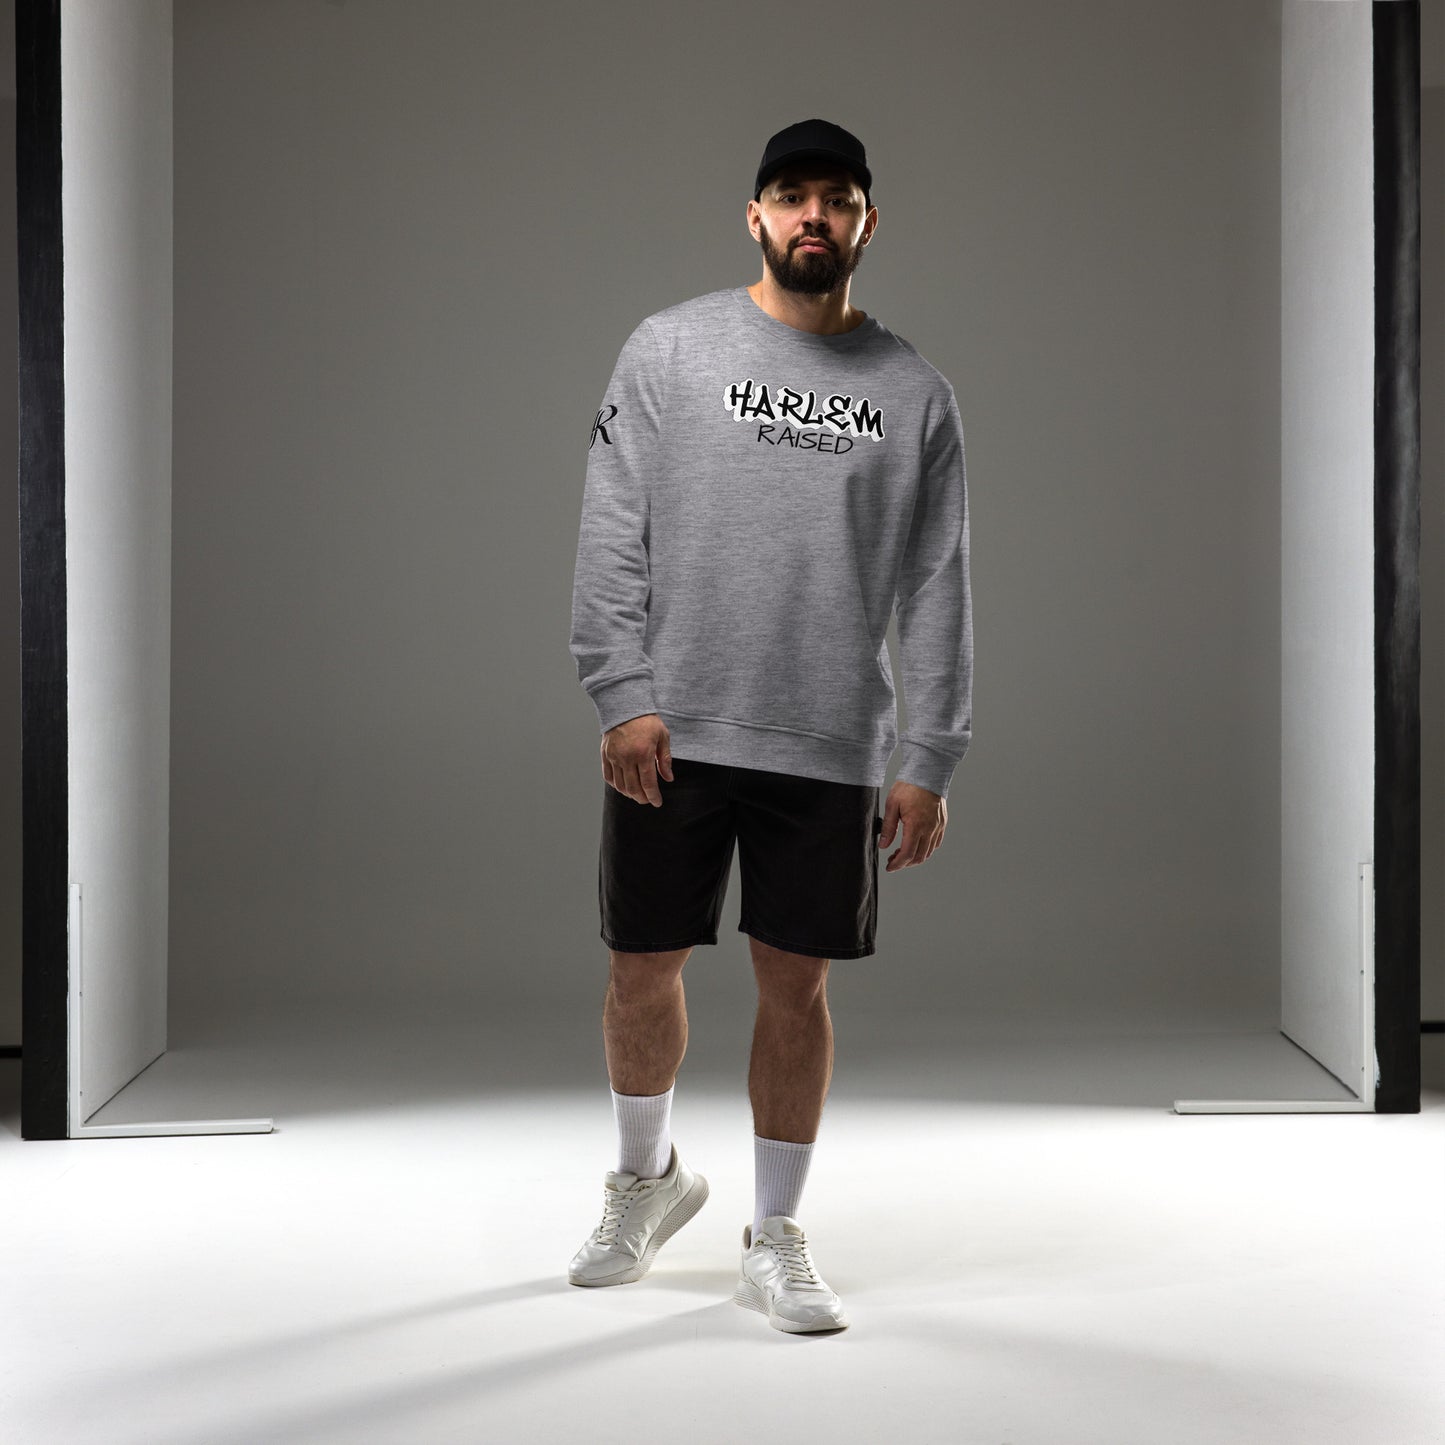 Jazrae Harlem Raised Unisex organic sweatshirt